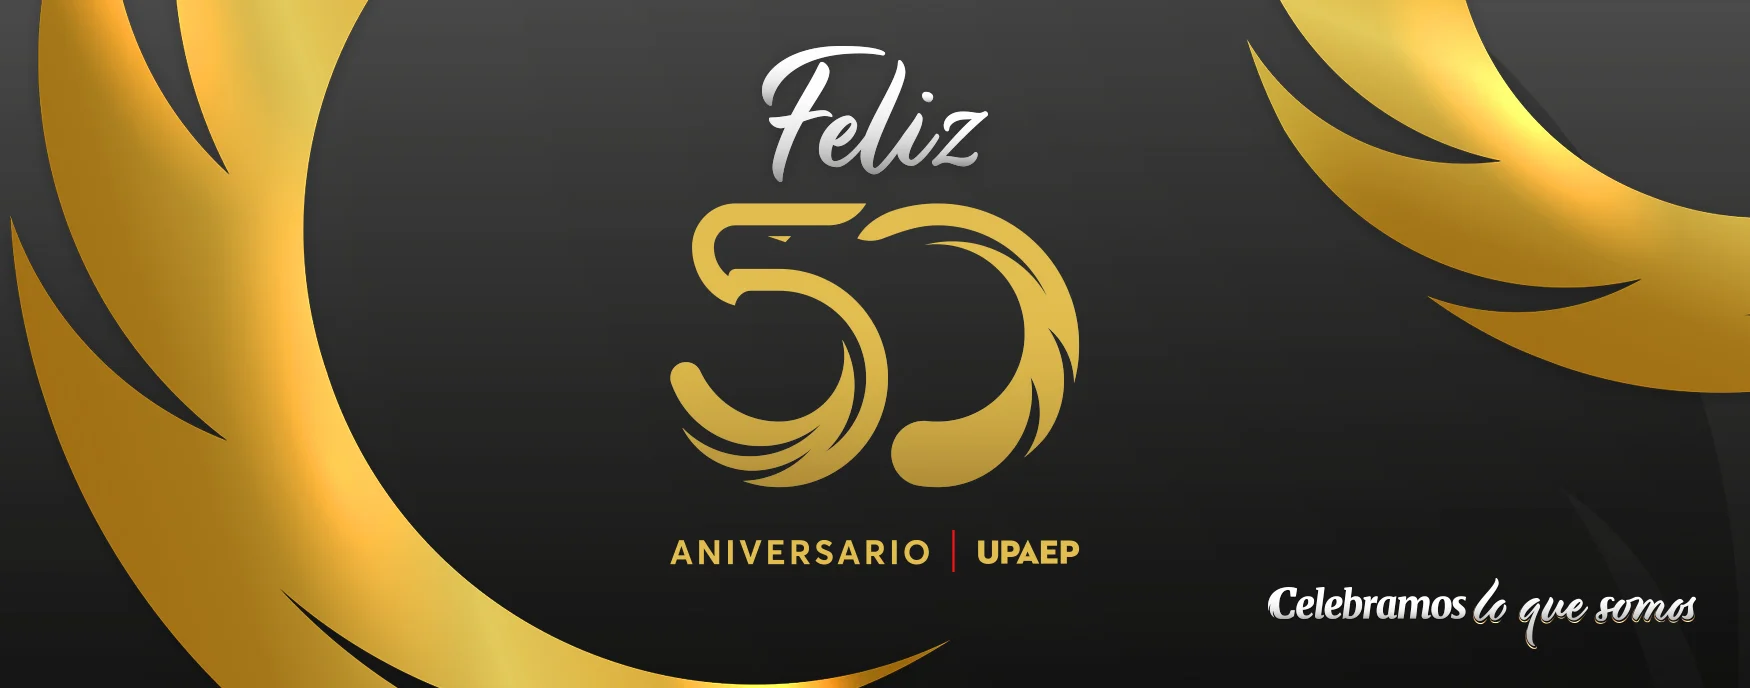 50Aniversario_Felicitaciones_BannerURs